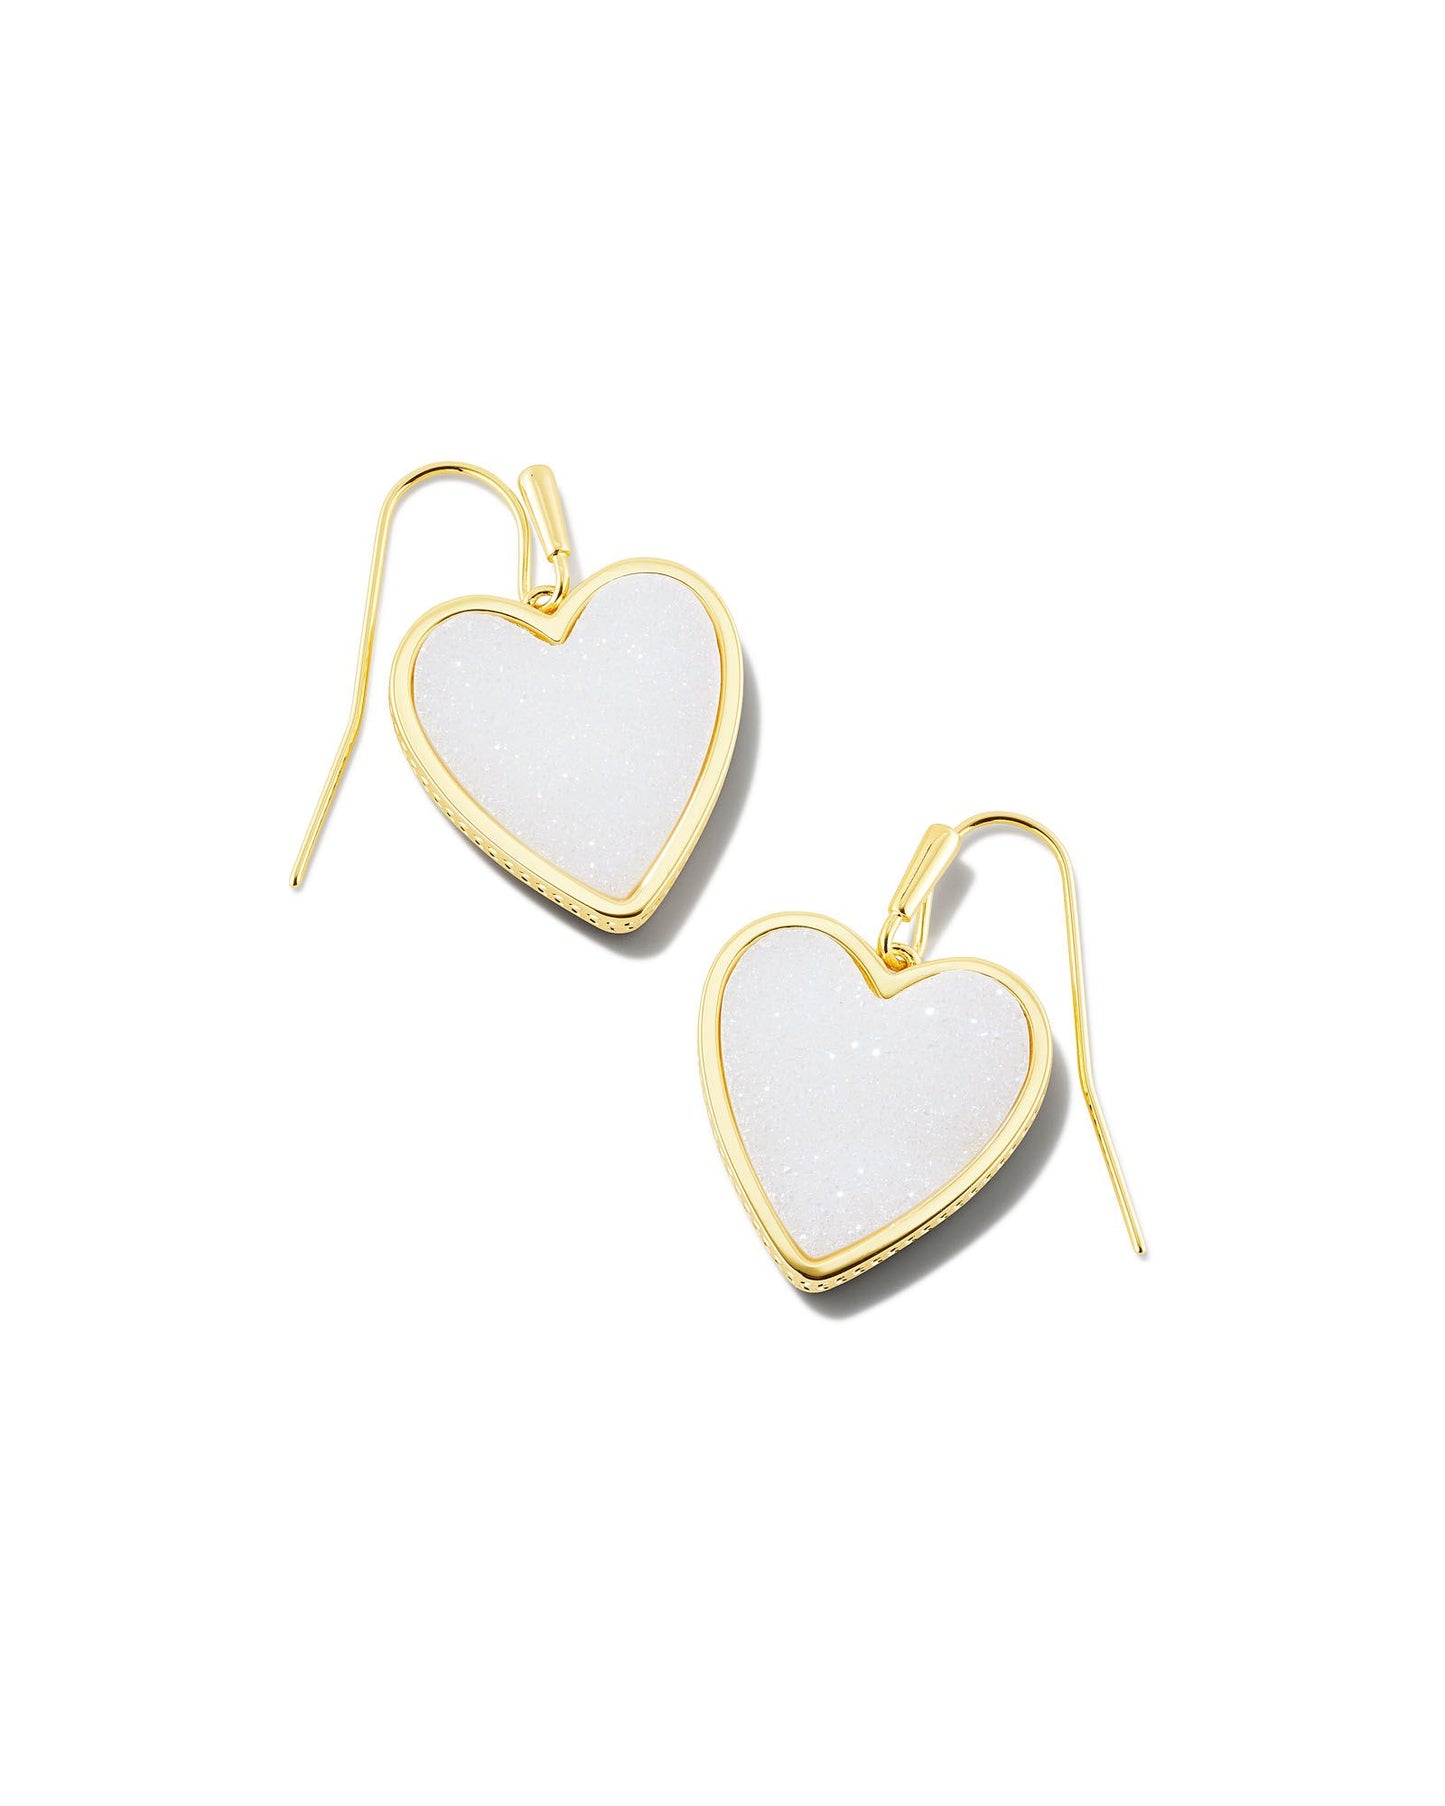 Kendra Scott Heart Drop Earrings Gold Iridescent Drusy-Earrings-Kendra Scott-E1991GLD-The Twisted Chandelier